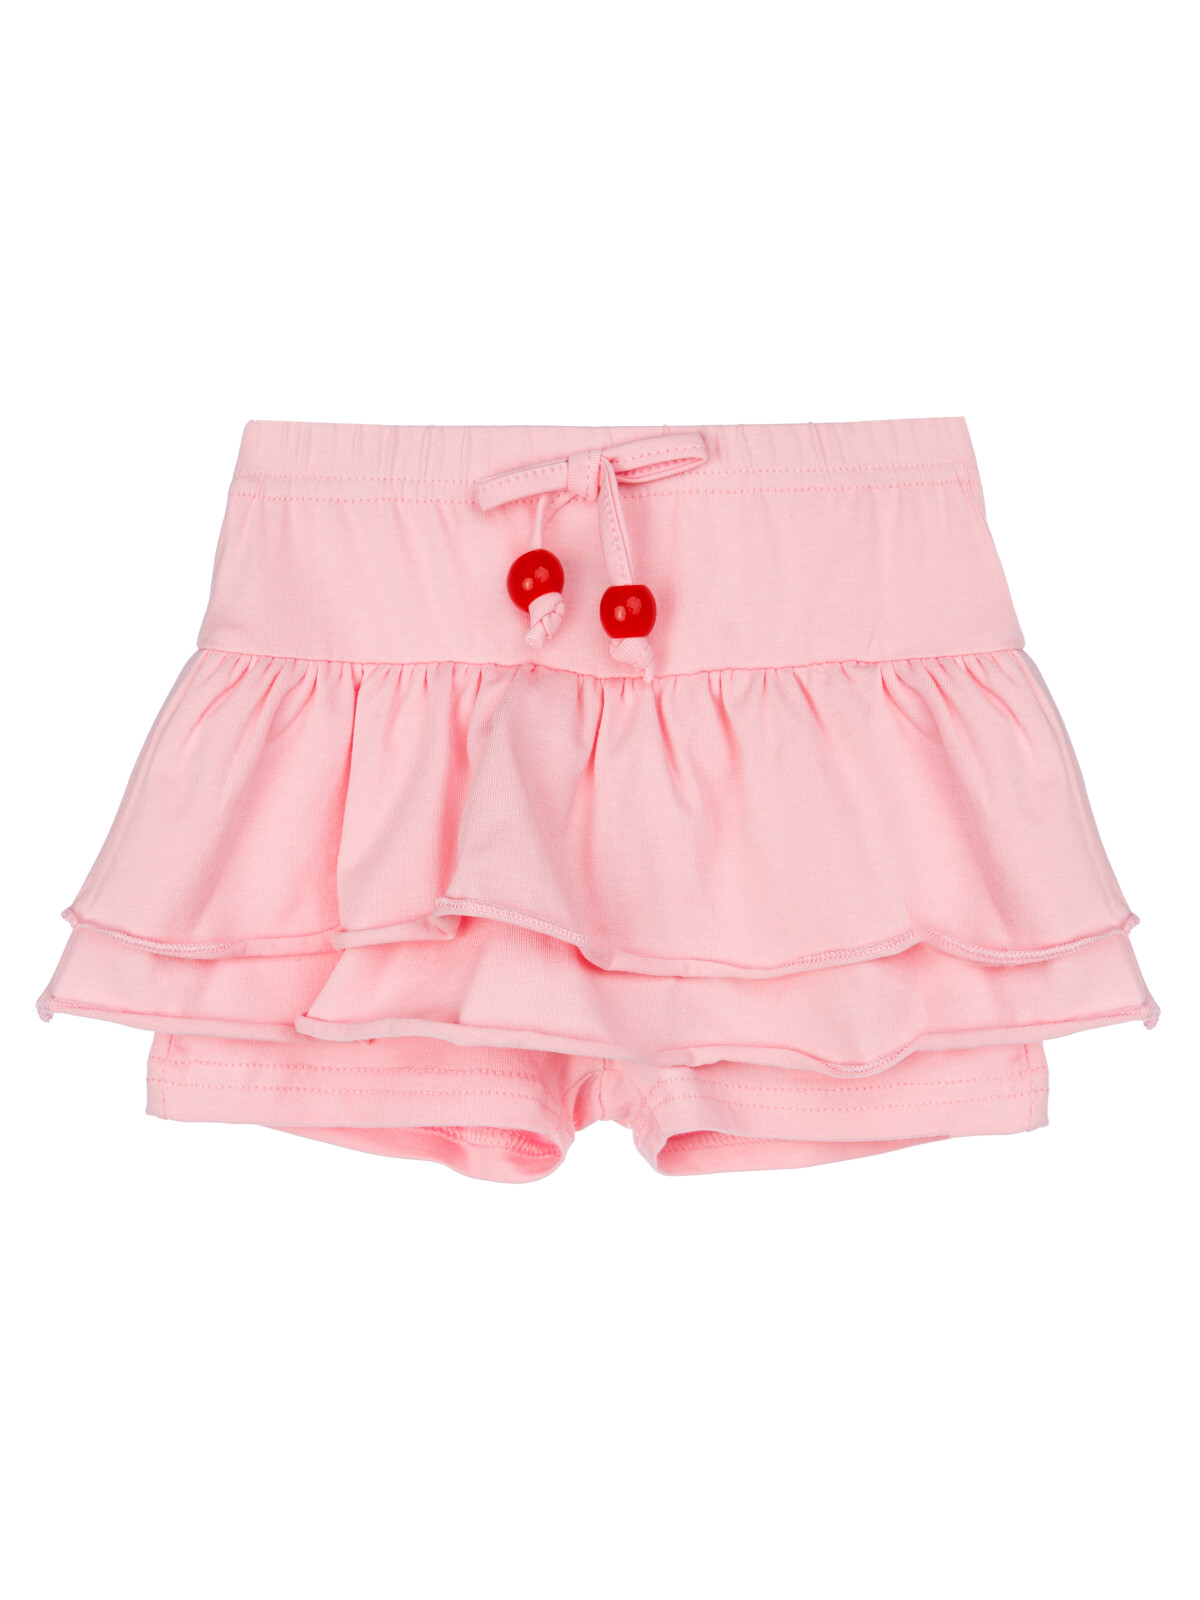 Юбка-шорты детская PlayToday 12429022, светло-розовый, 92